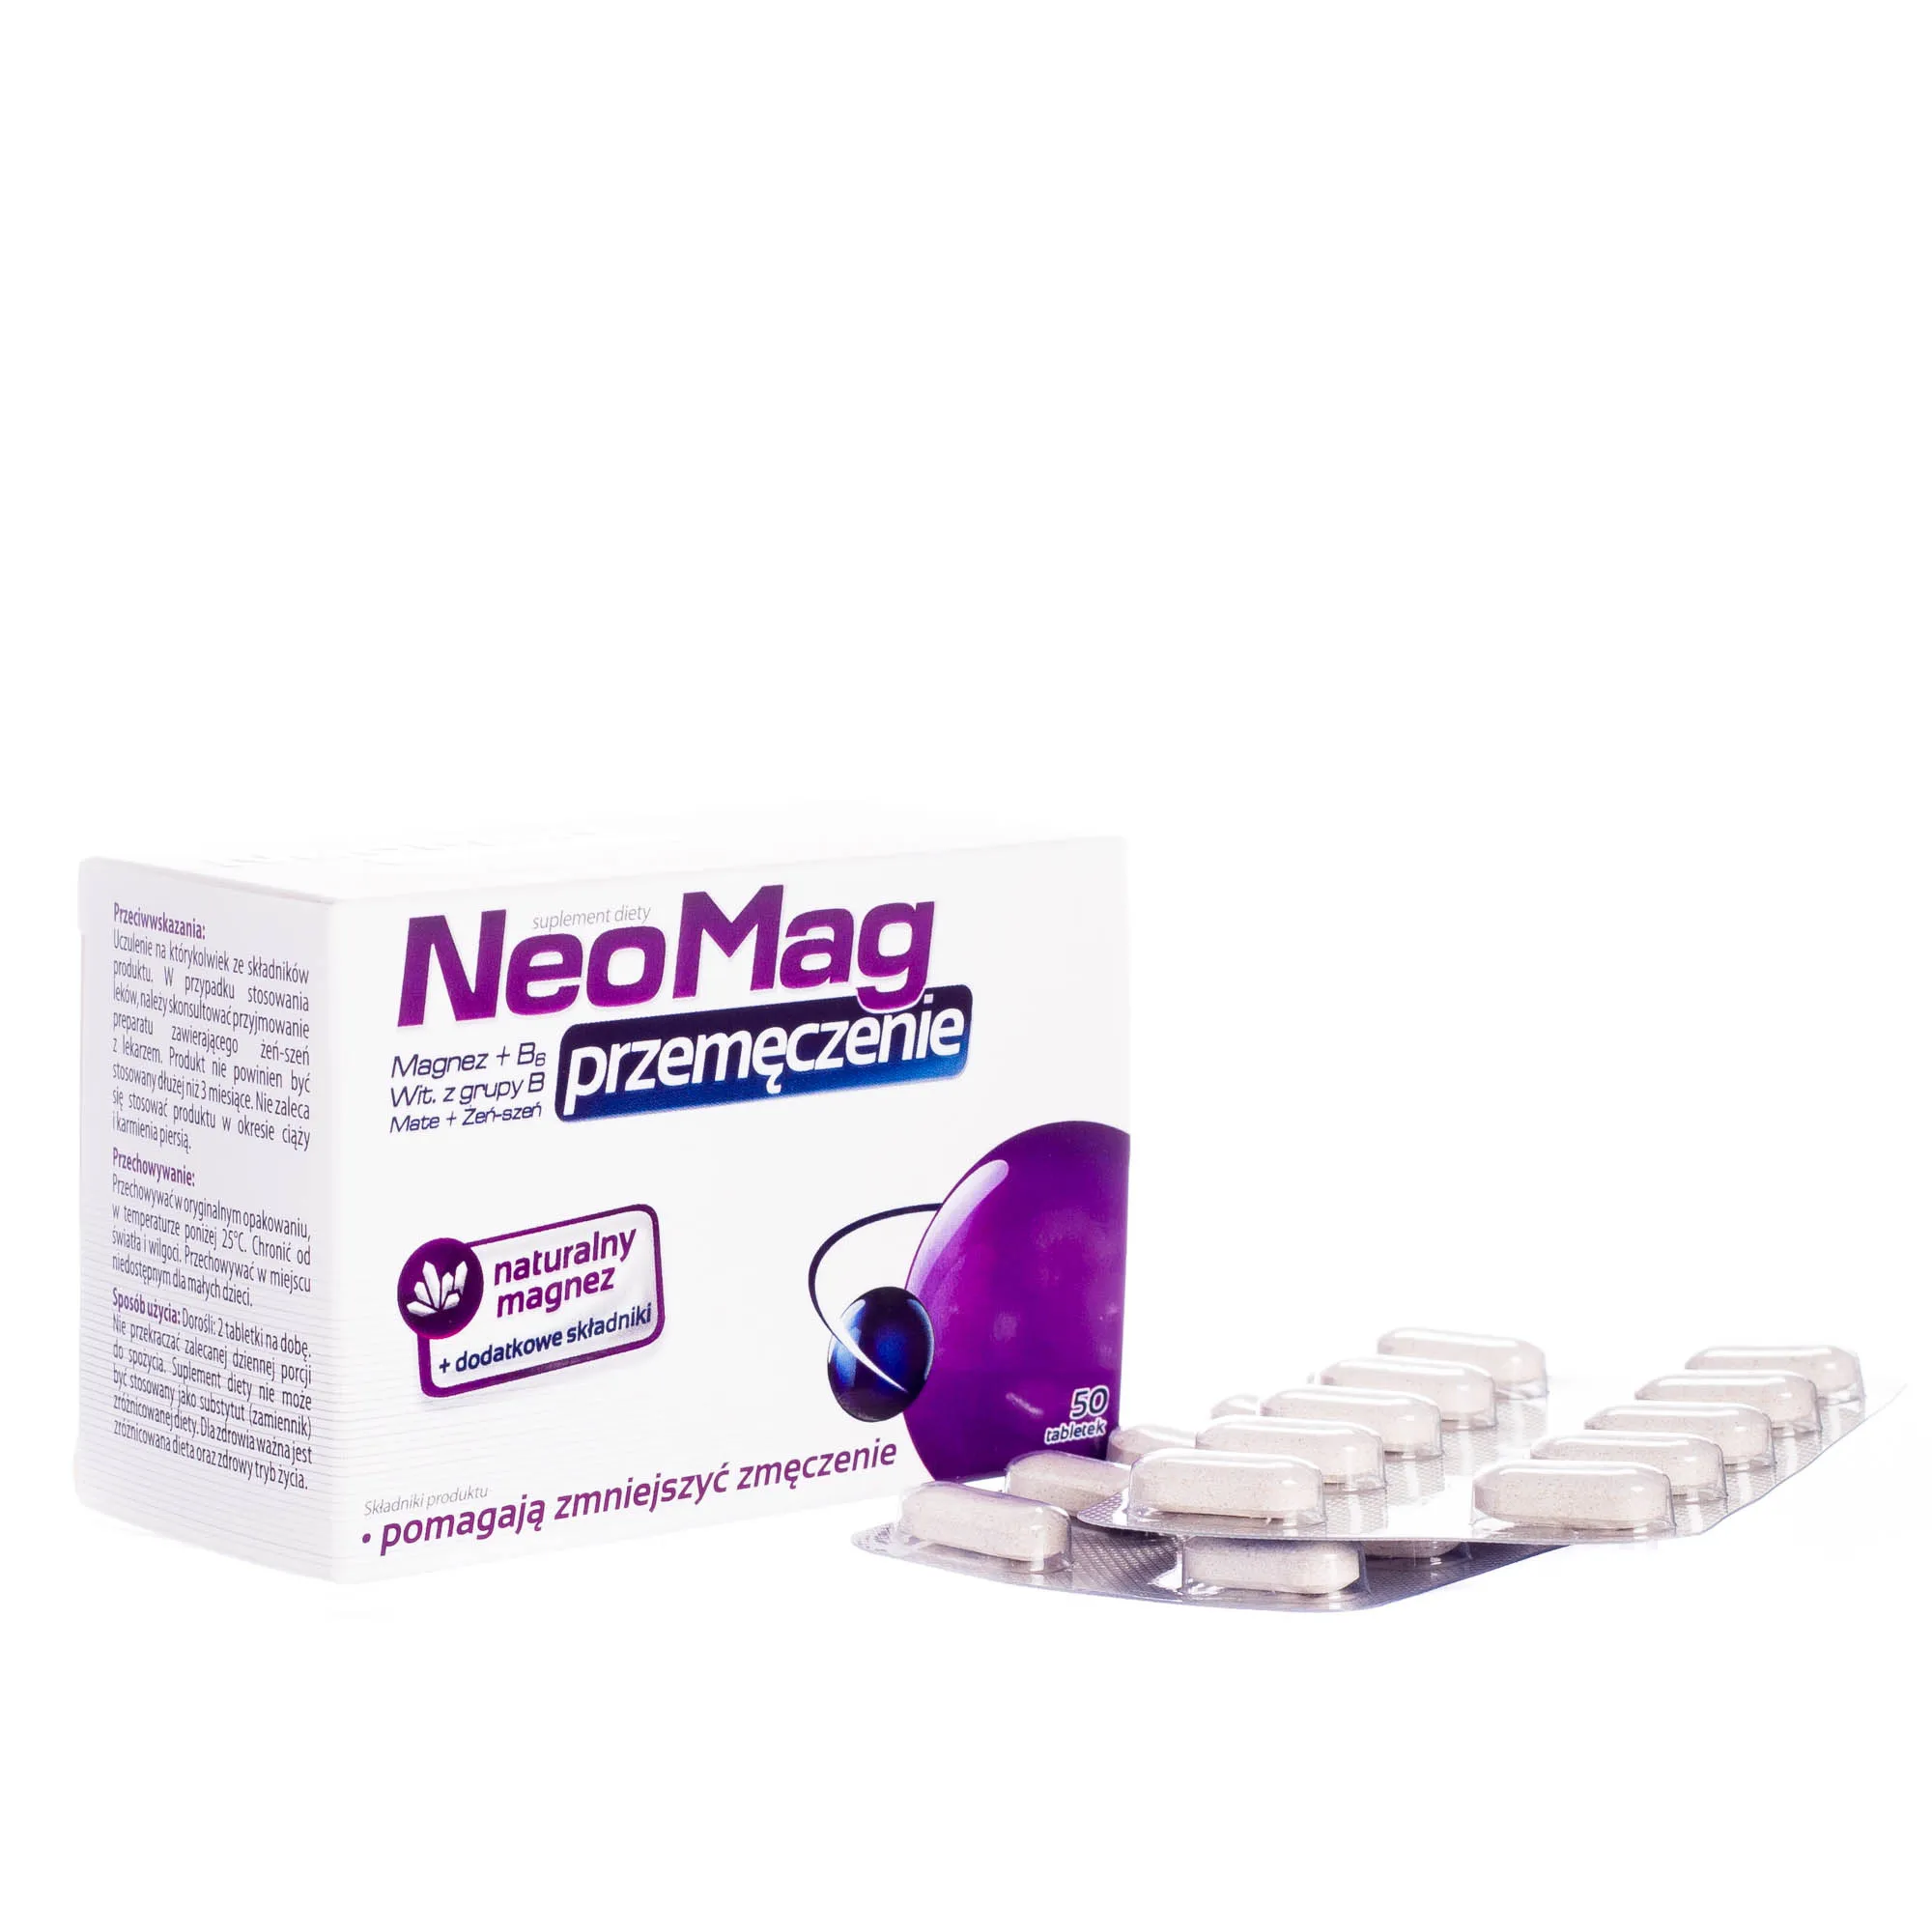 NeoMag przemęczenie - suplement diet z Magnezem i wit. z grupy B, 50 tabletek